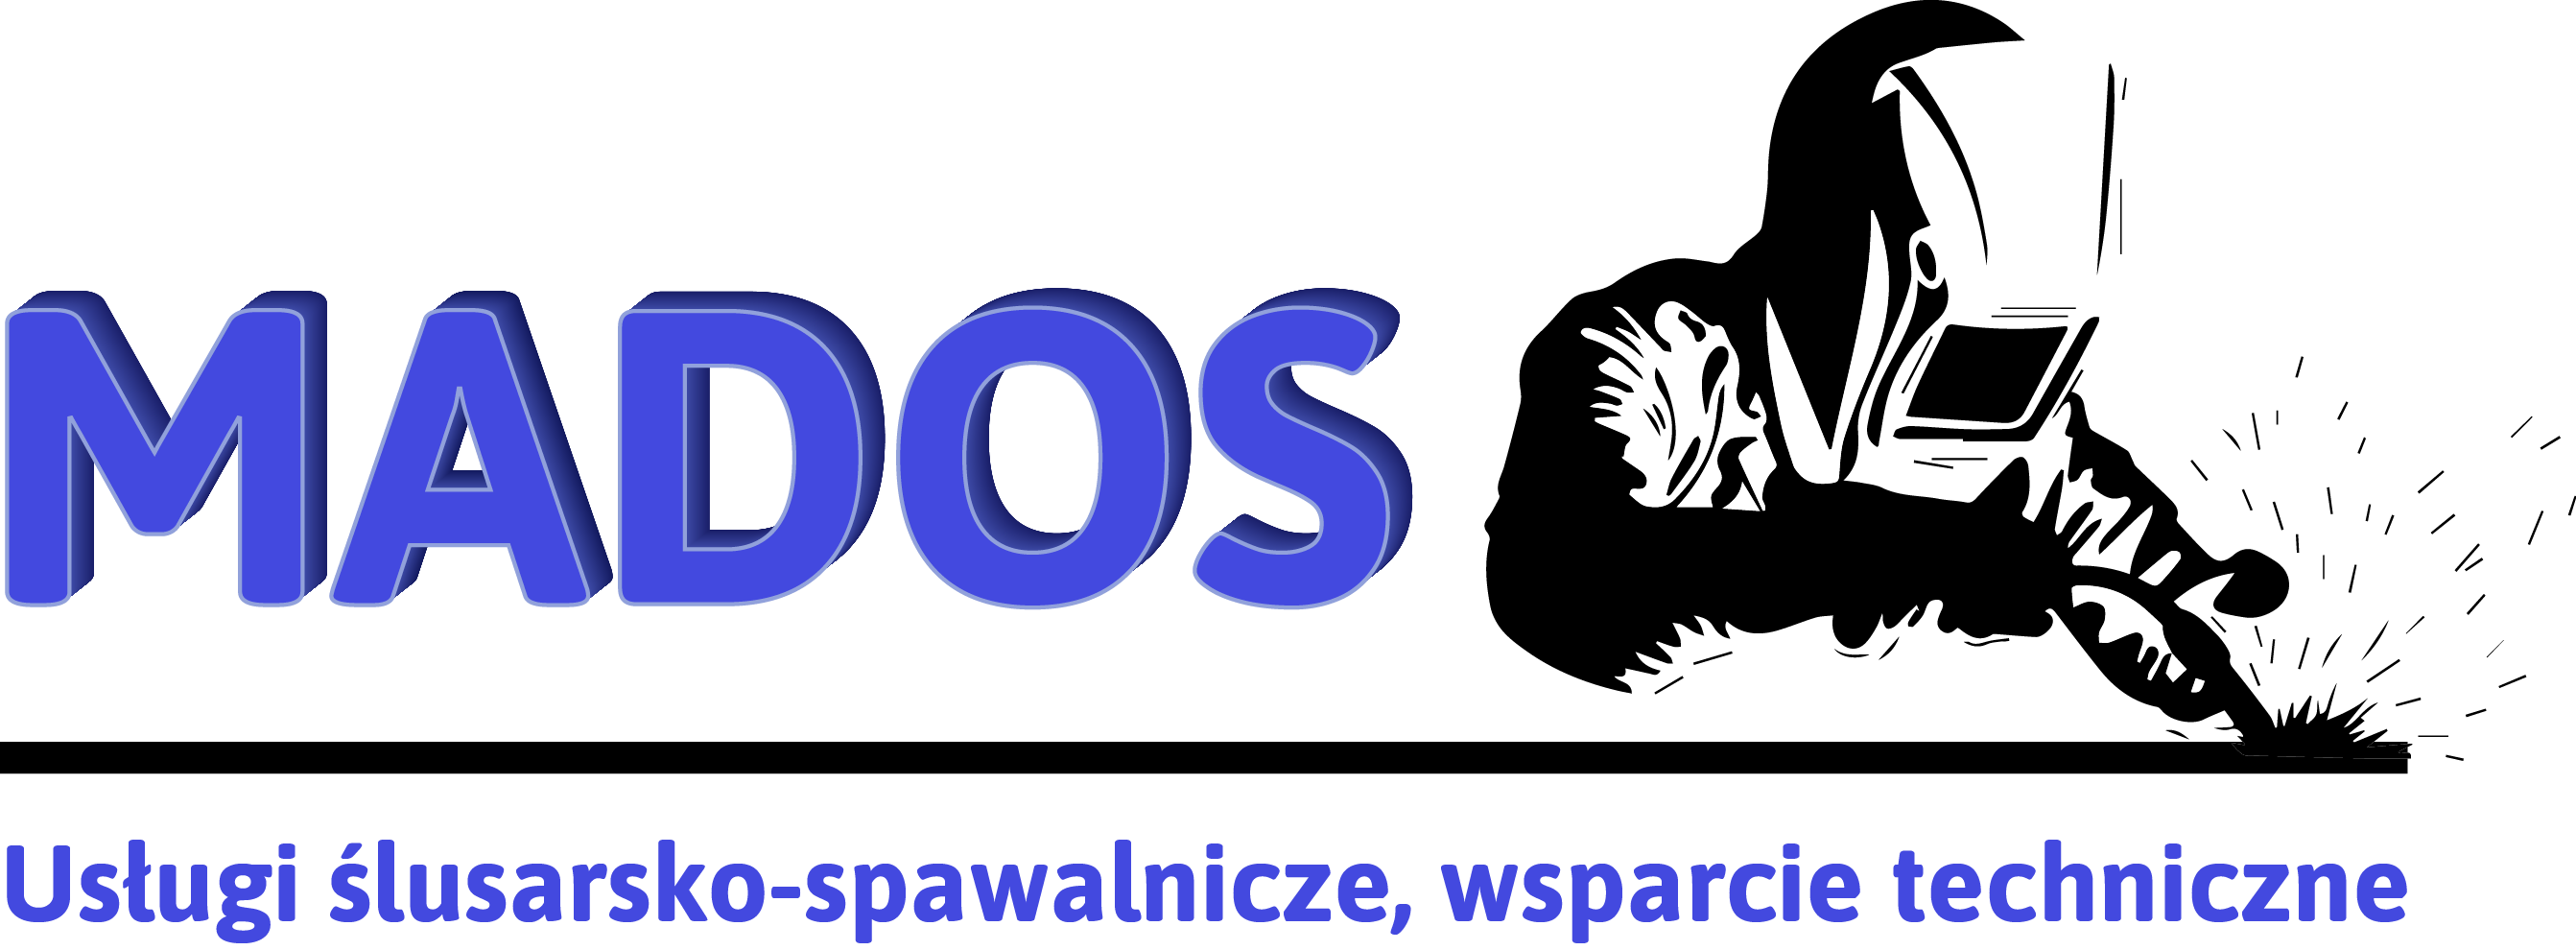 Mados s.c - logo